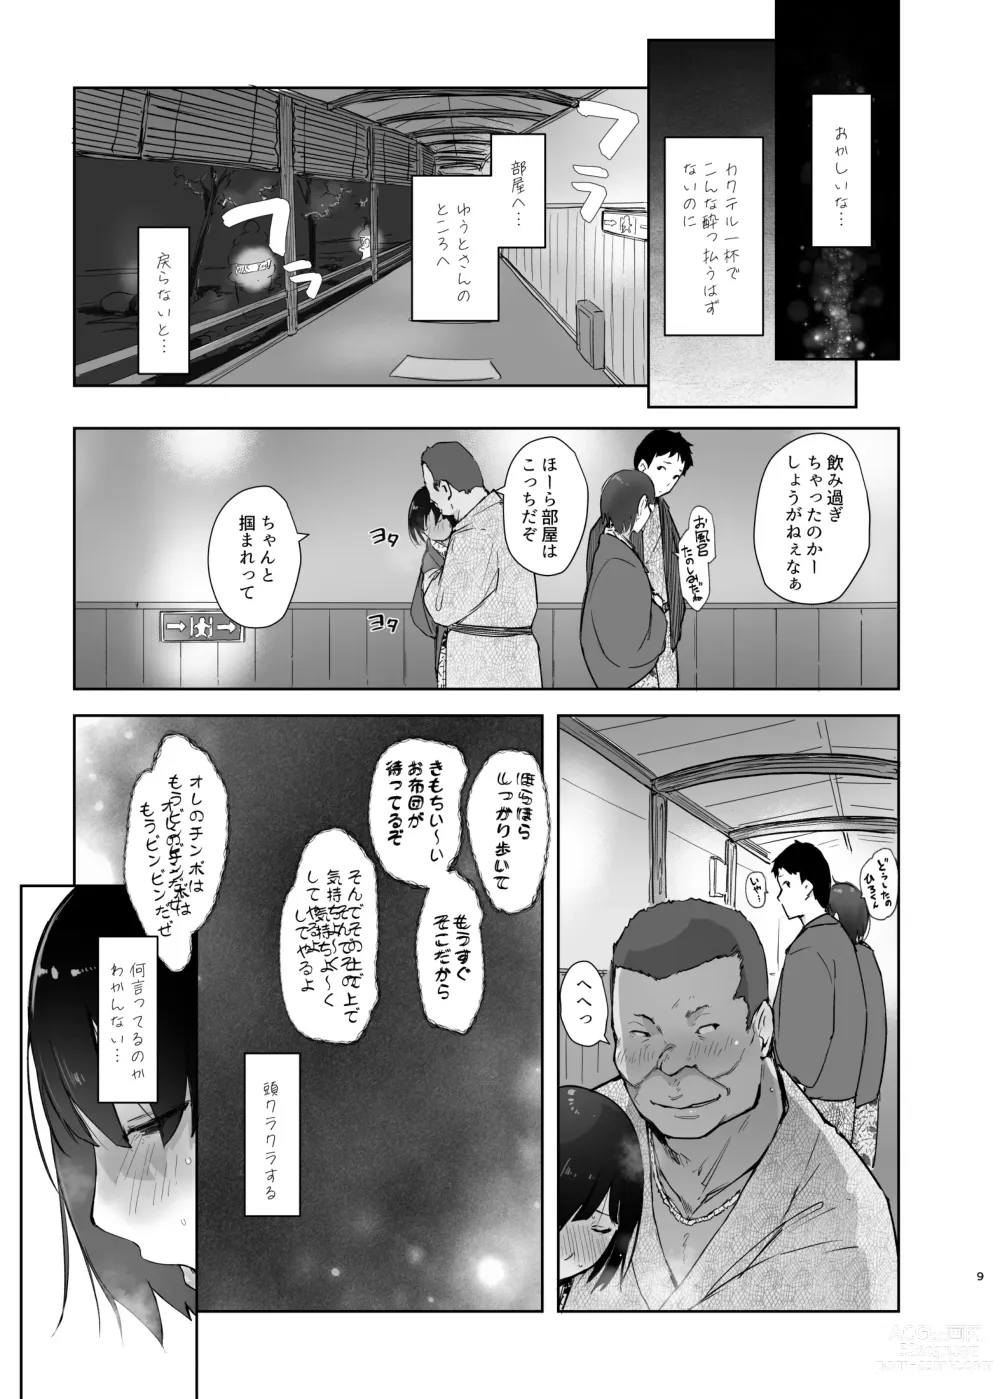 Page 8 of doujinshi Zansho Ichiya